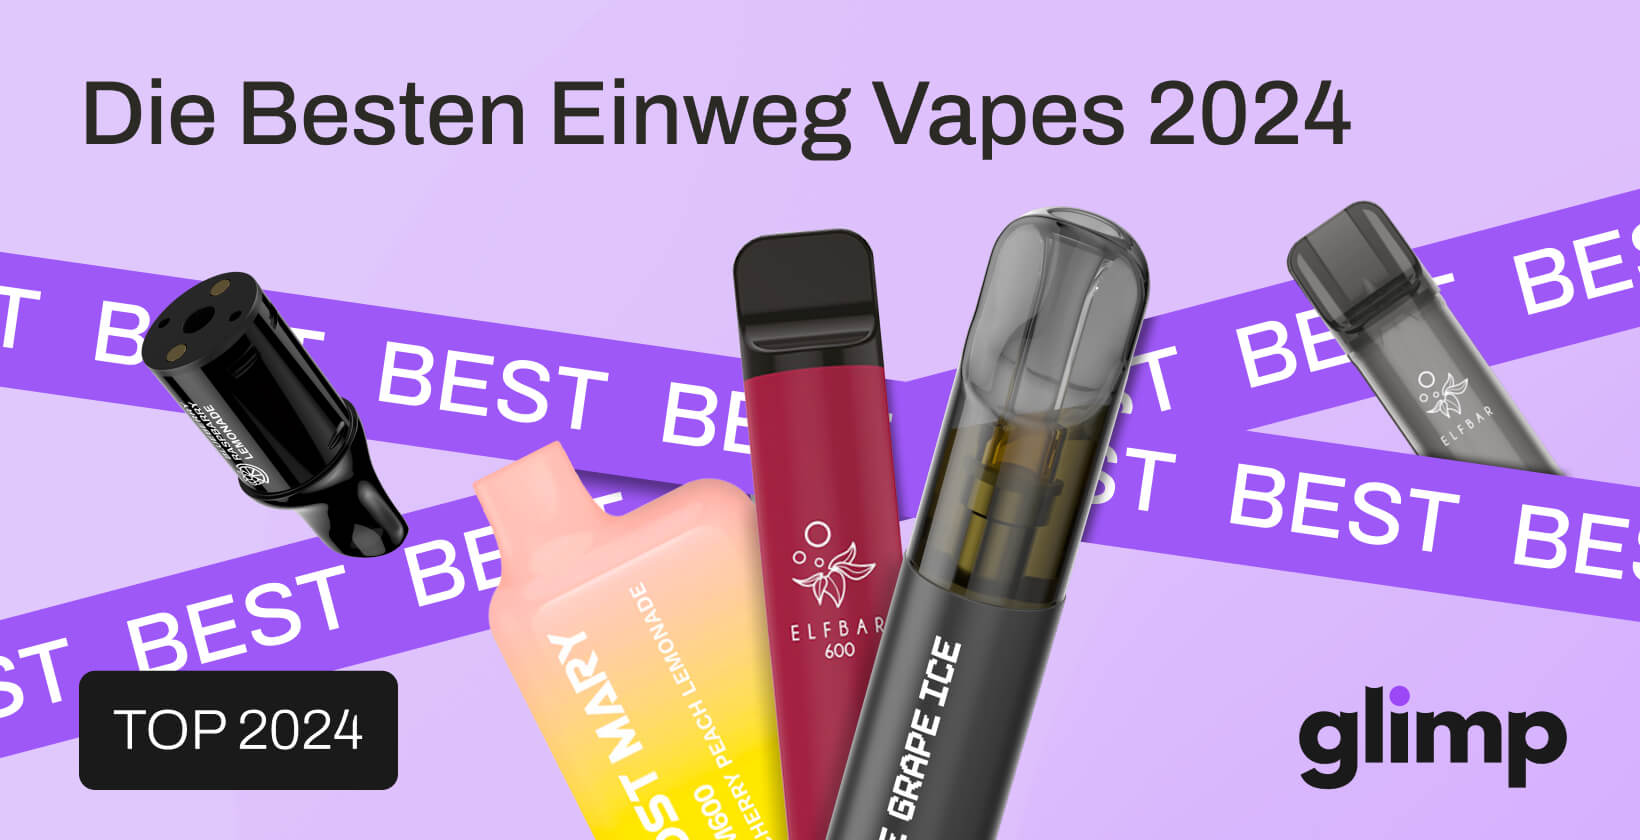 Die 22 besten Einweg E-Zigaretten in 2024